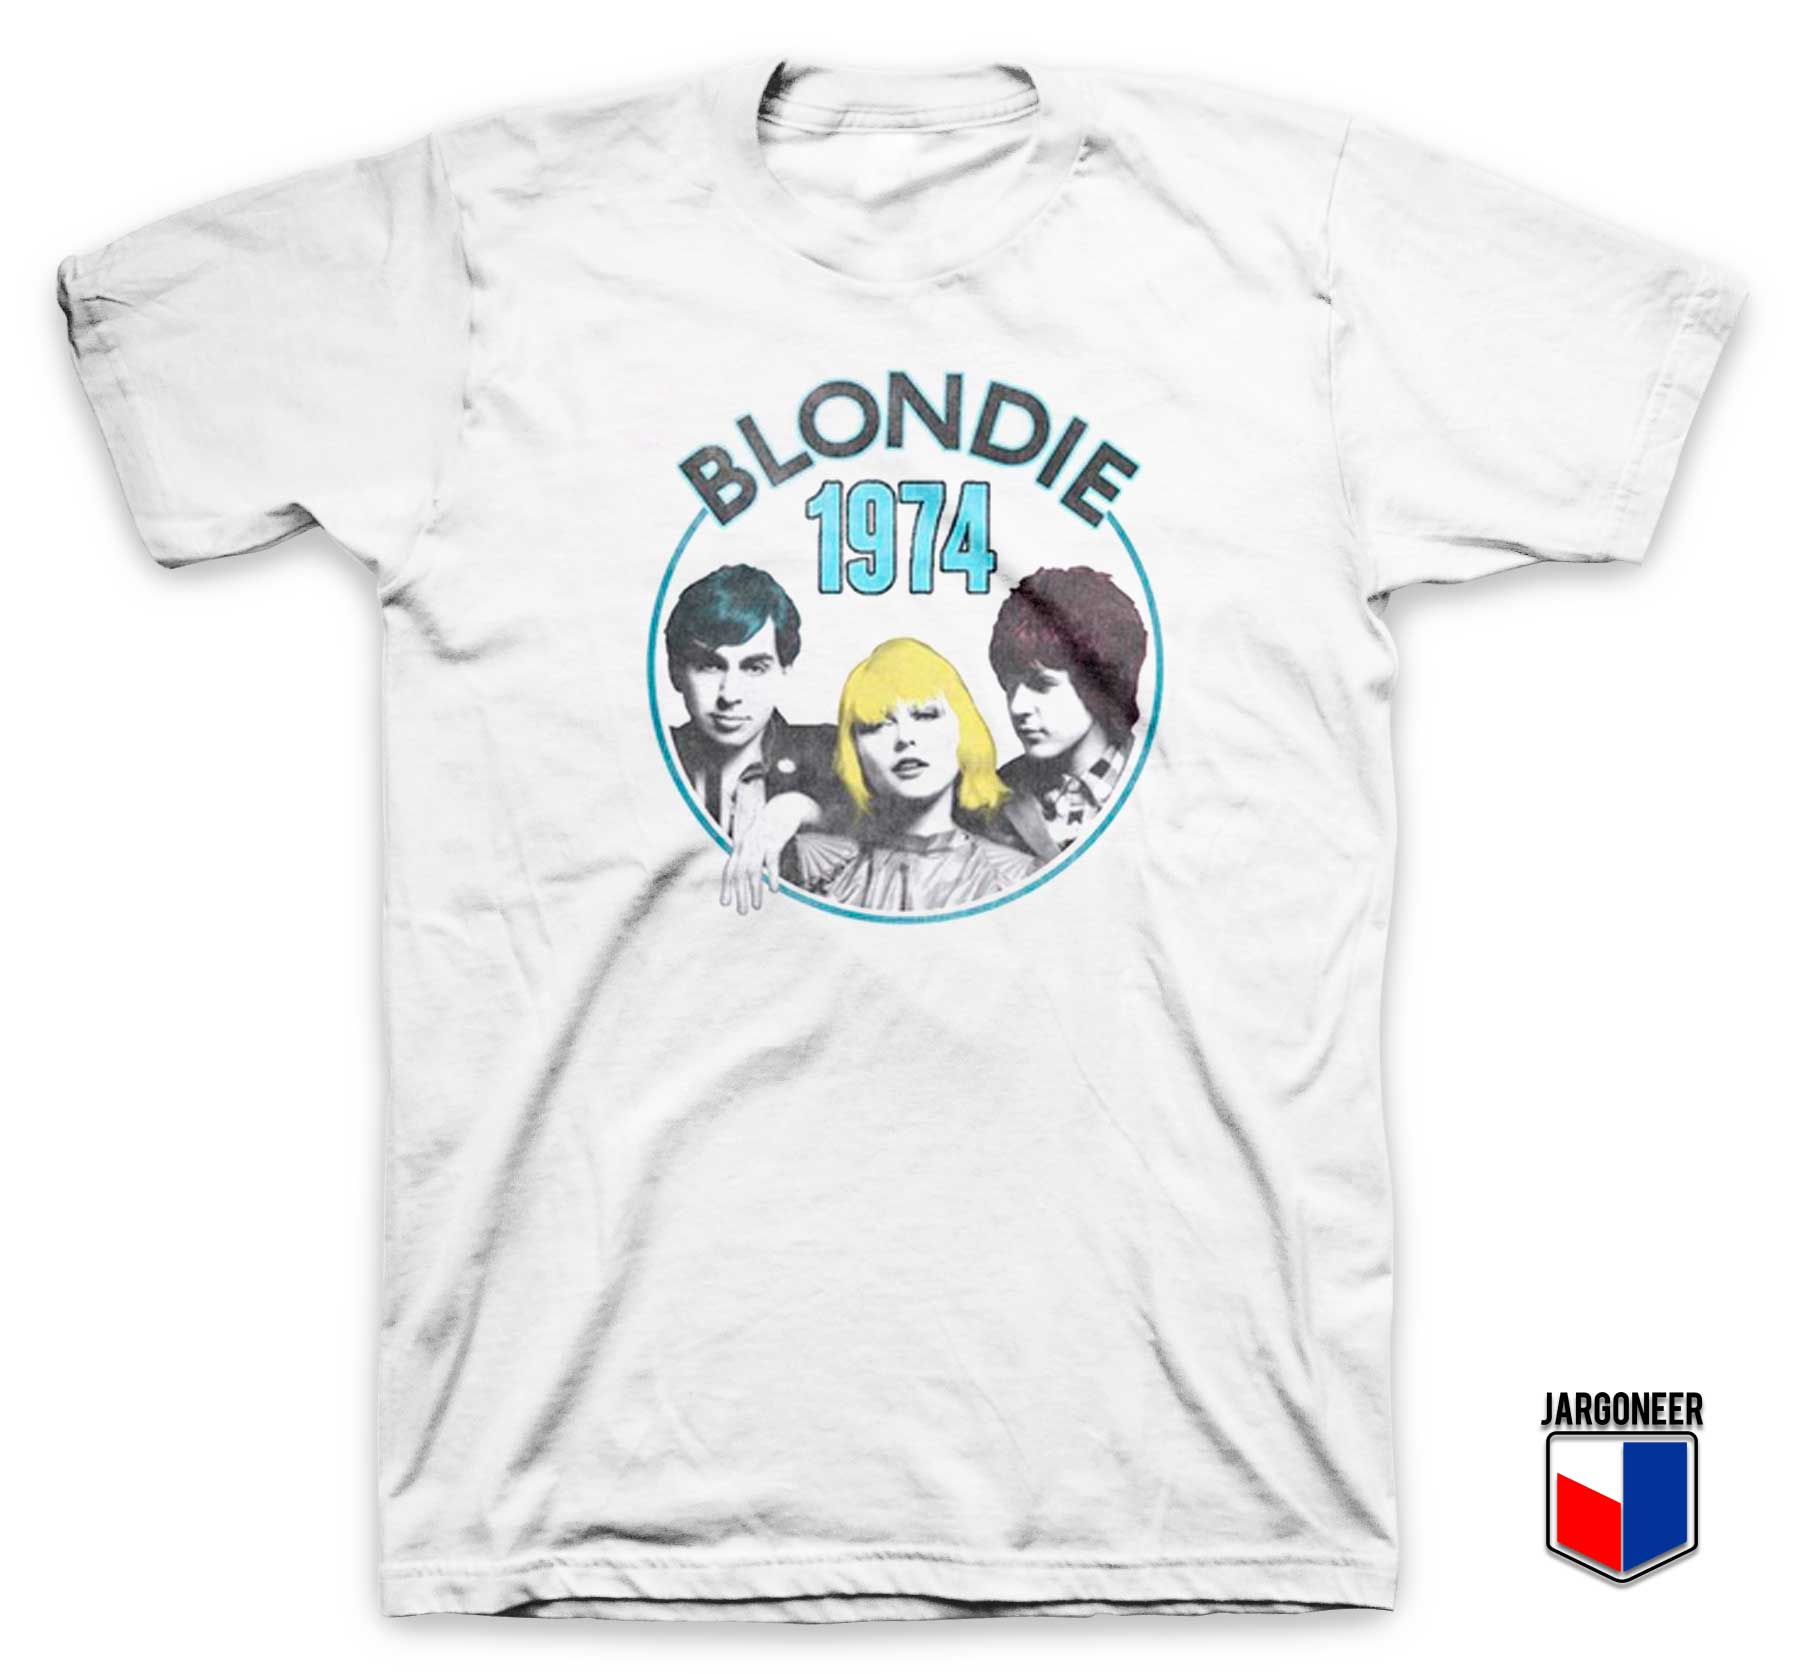 Blondie Line Up 1974 T Shirt - Shop Unique Graphic Cool Shirt Designs